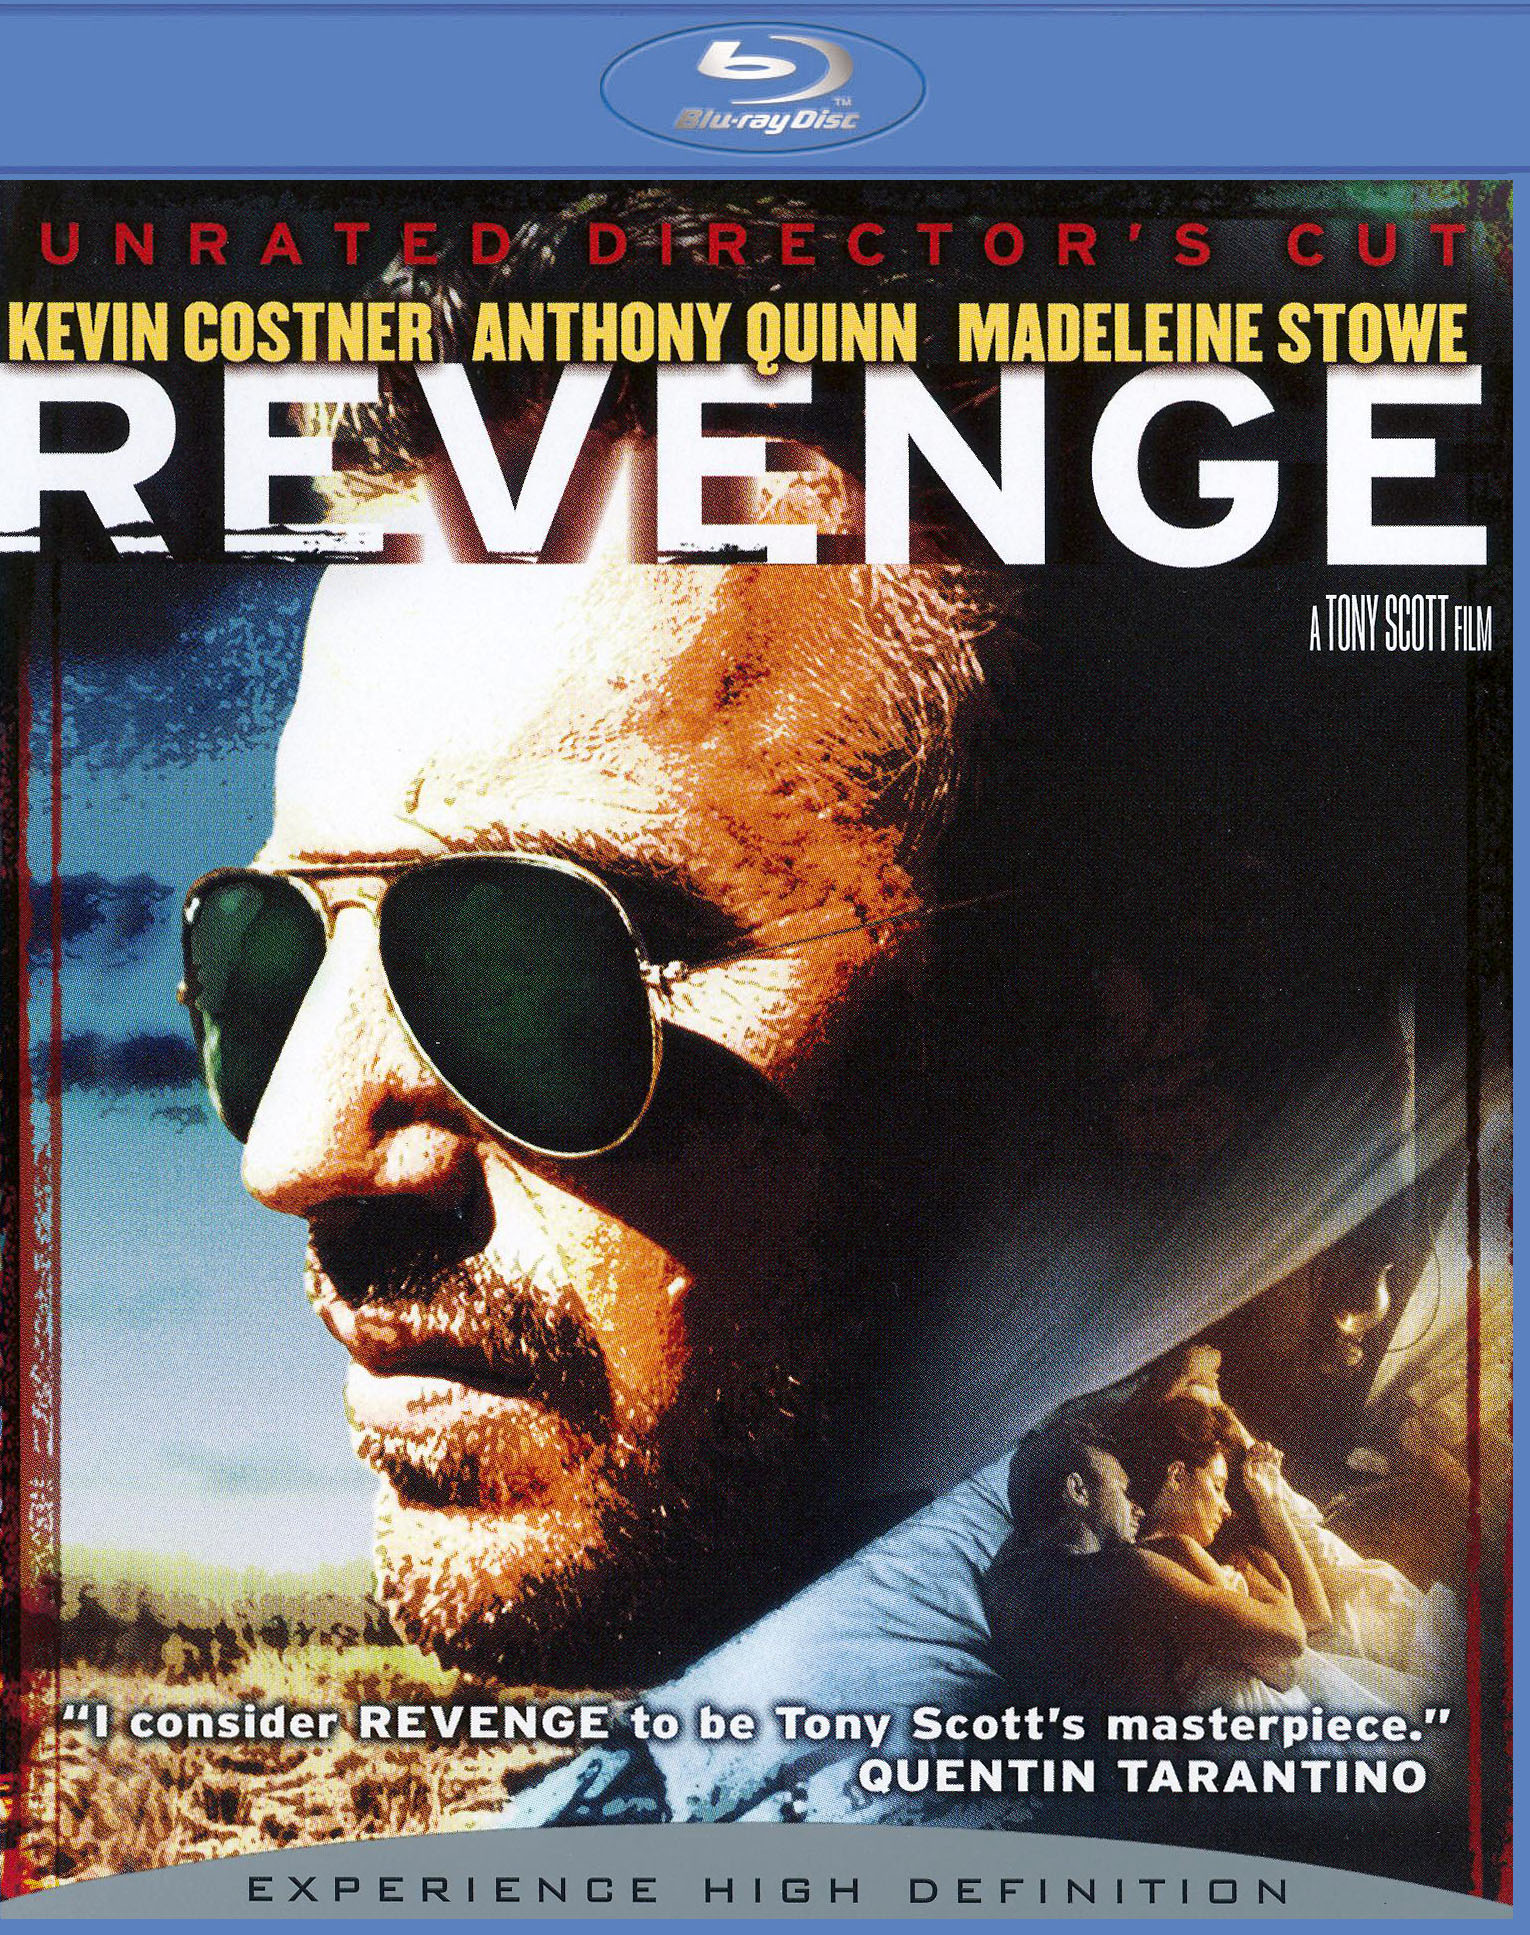 Revenge [Blu-ray] [1990] - Best Buy